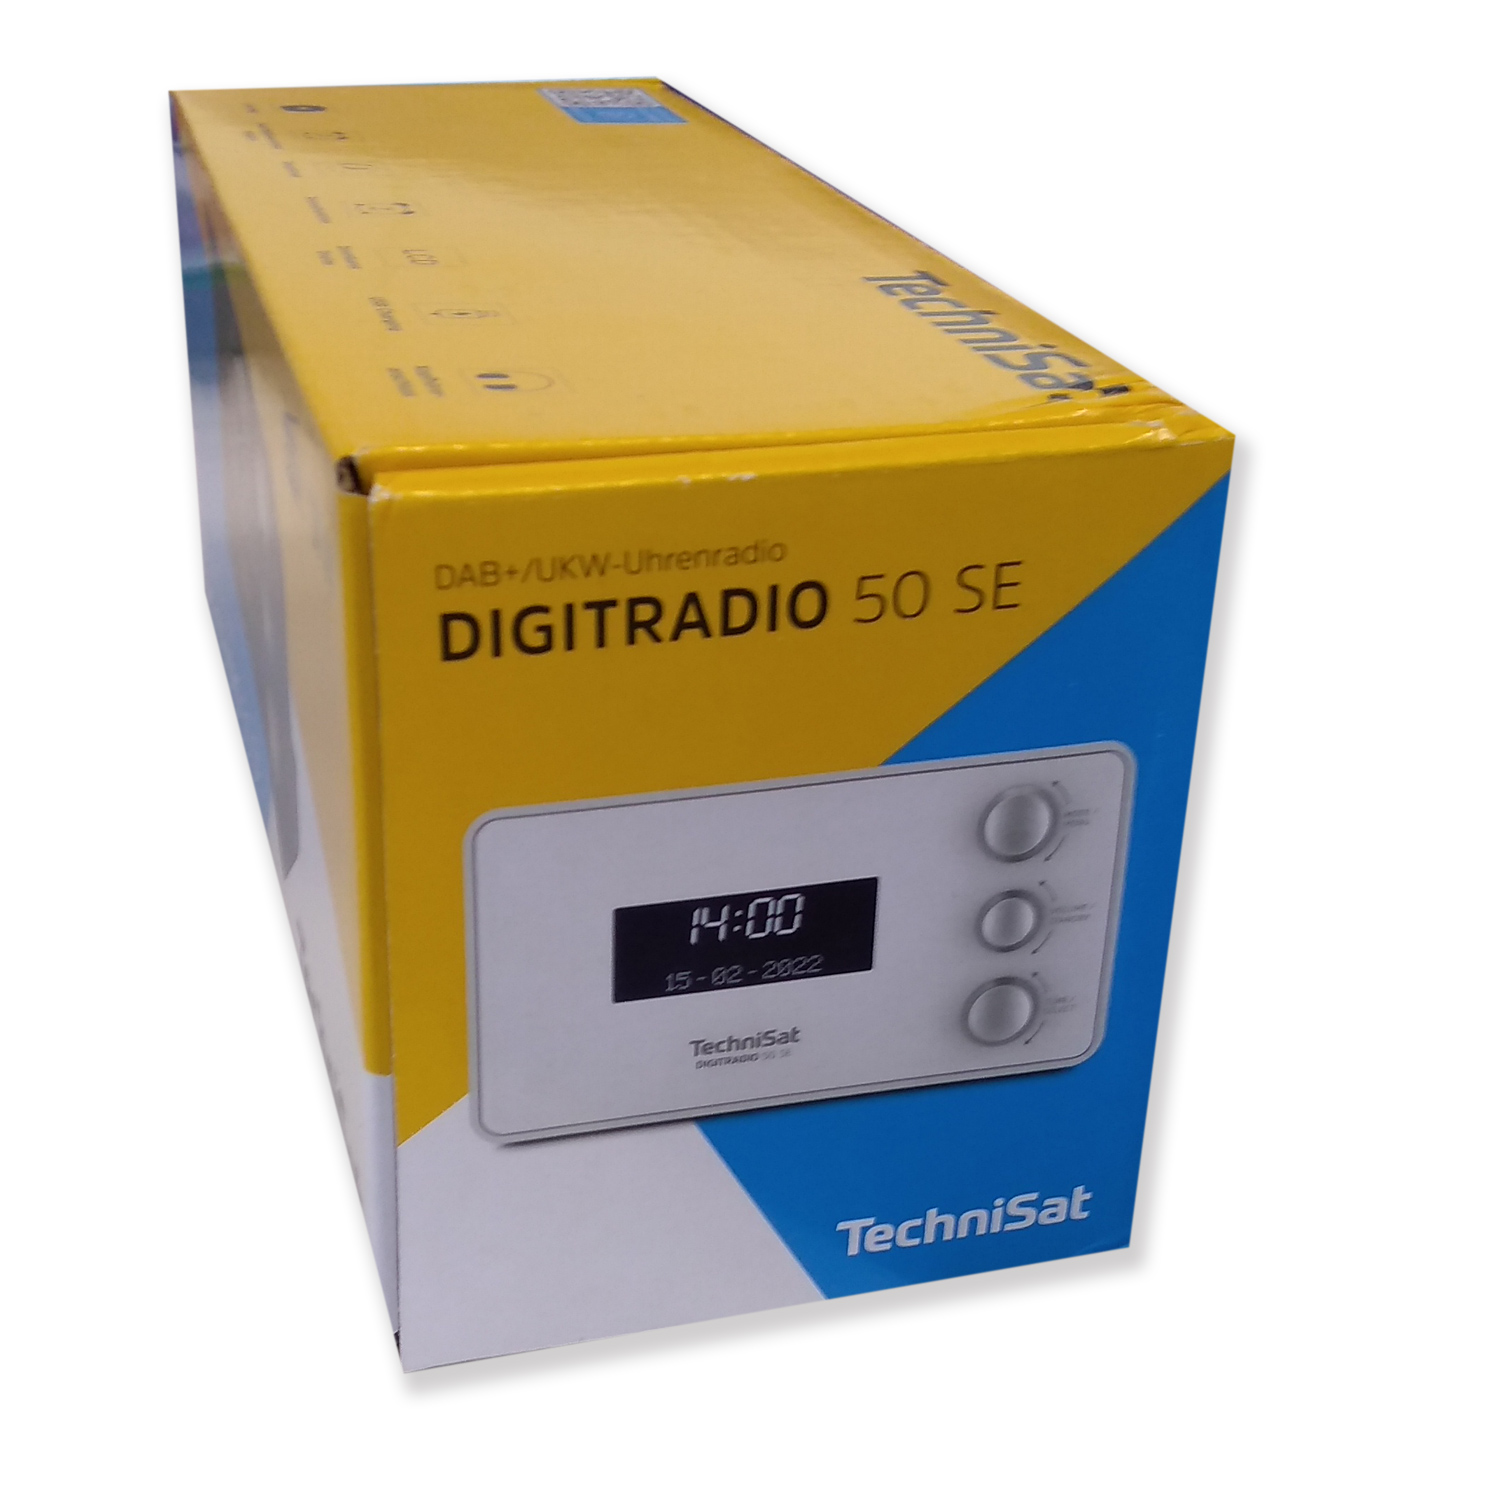 TechniSat DigitRadio 50 SE DAB+/UKW Uhrenradio mit LCD-Display weiß von TechniSat